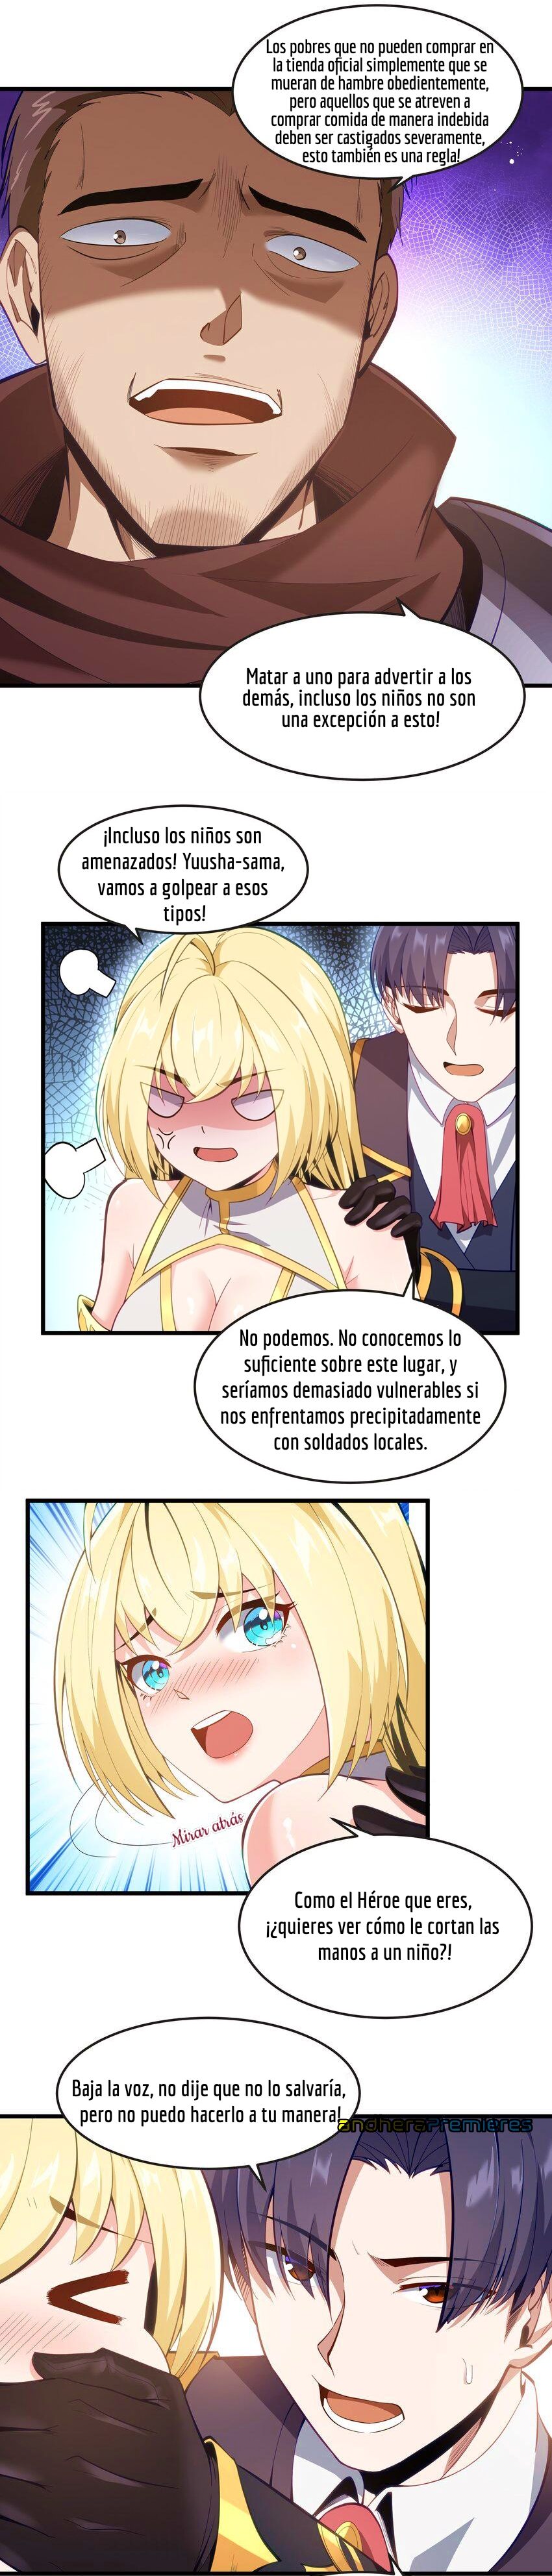 Manga El Héroe de la Avaricia Chapter 8 image number 7